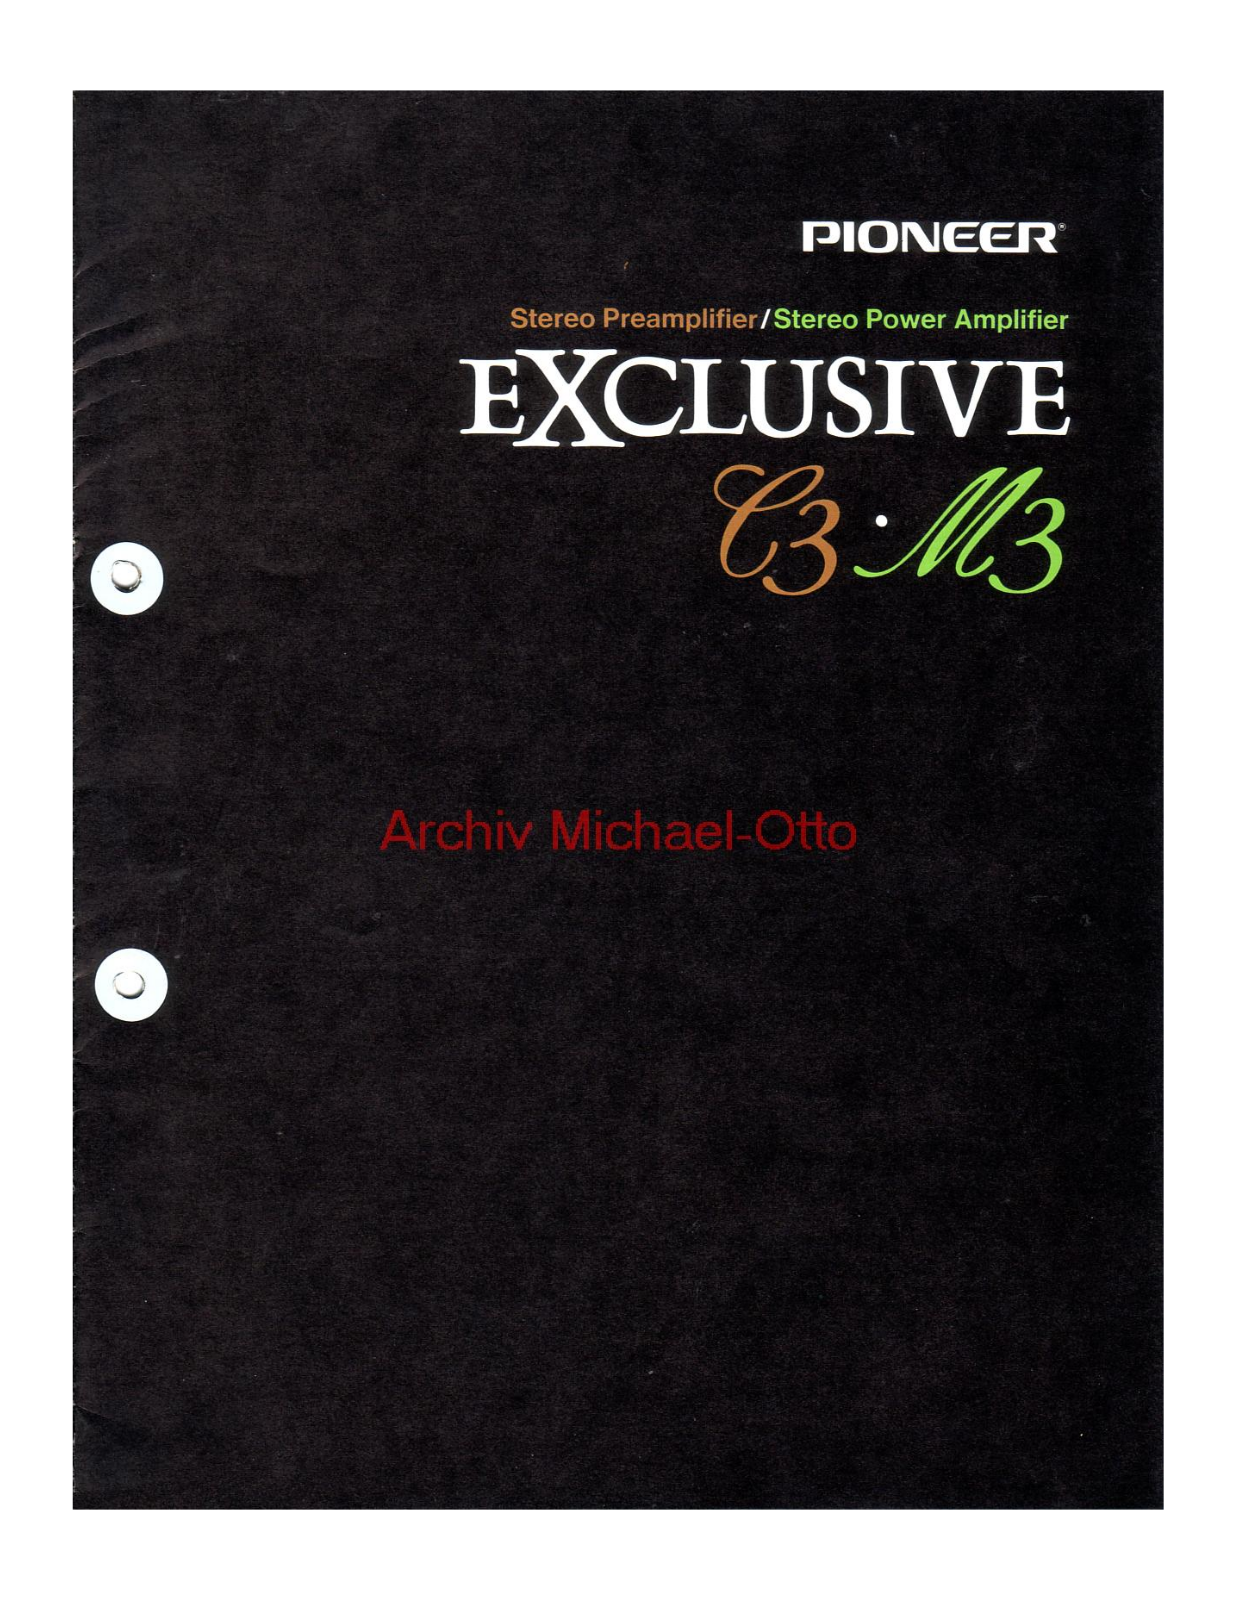 Pioneer EXCLUSIVE C-3, Exclusive M-3 Brochure